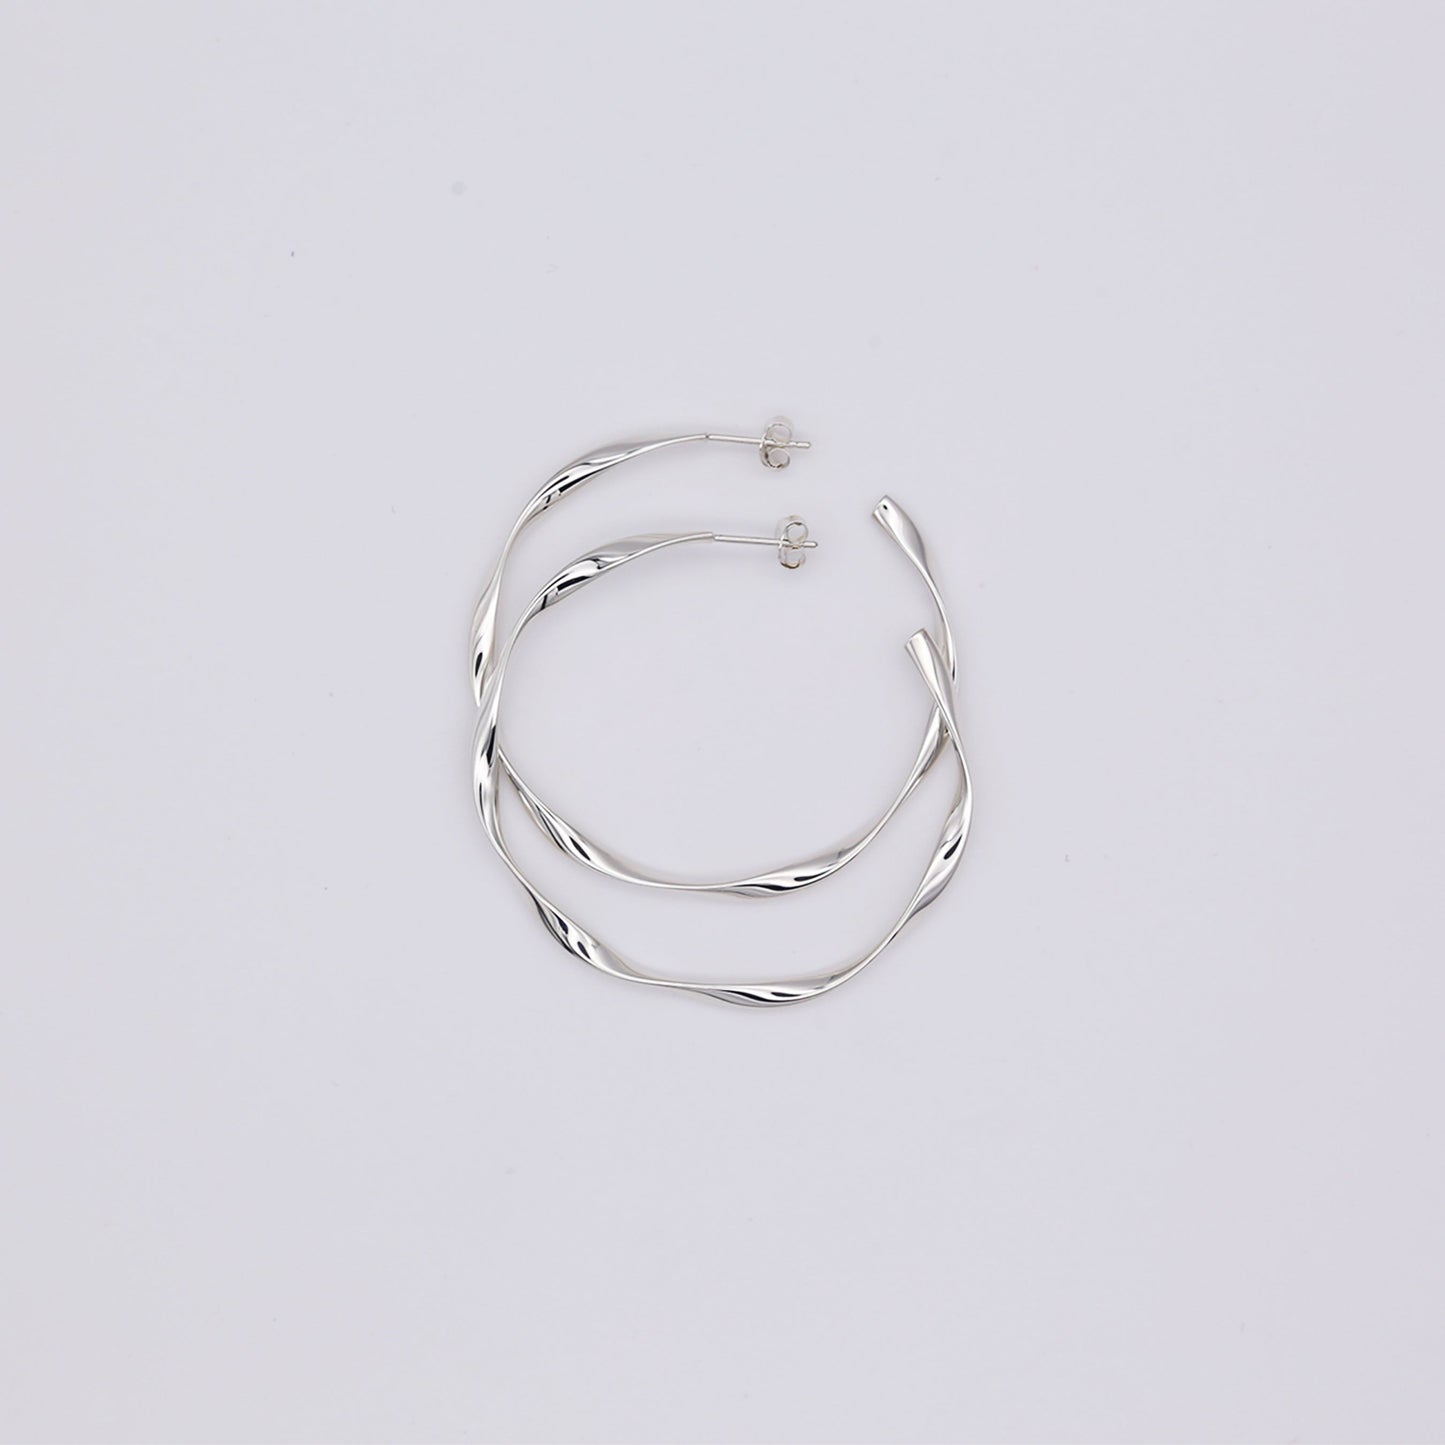 IPPOLITA Lightweight Medium Hammered Hoop Earrings in 925 Silver